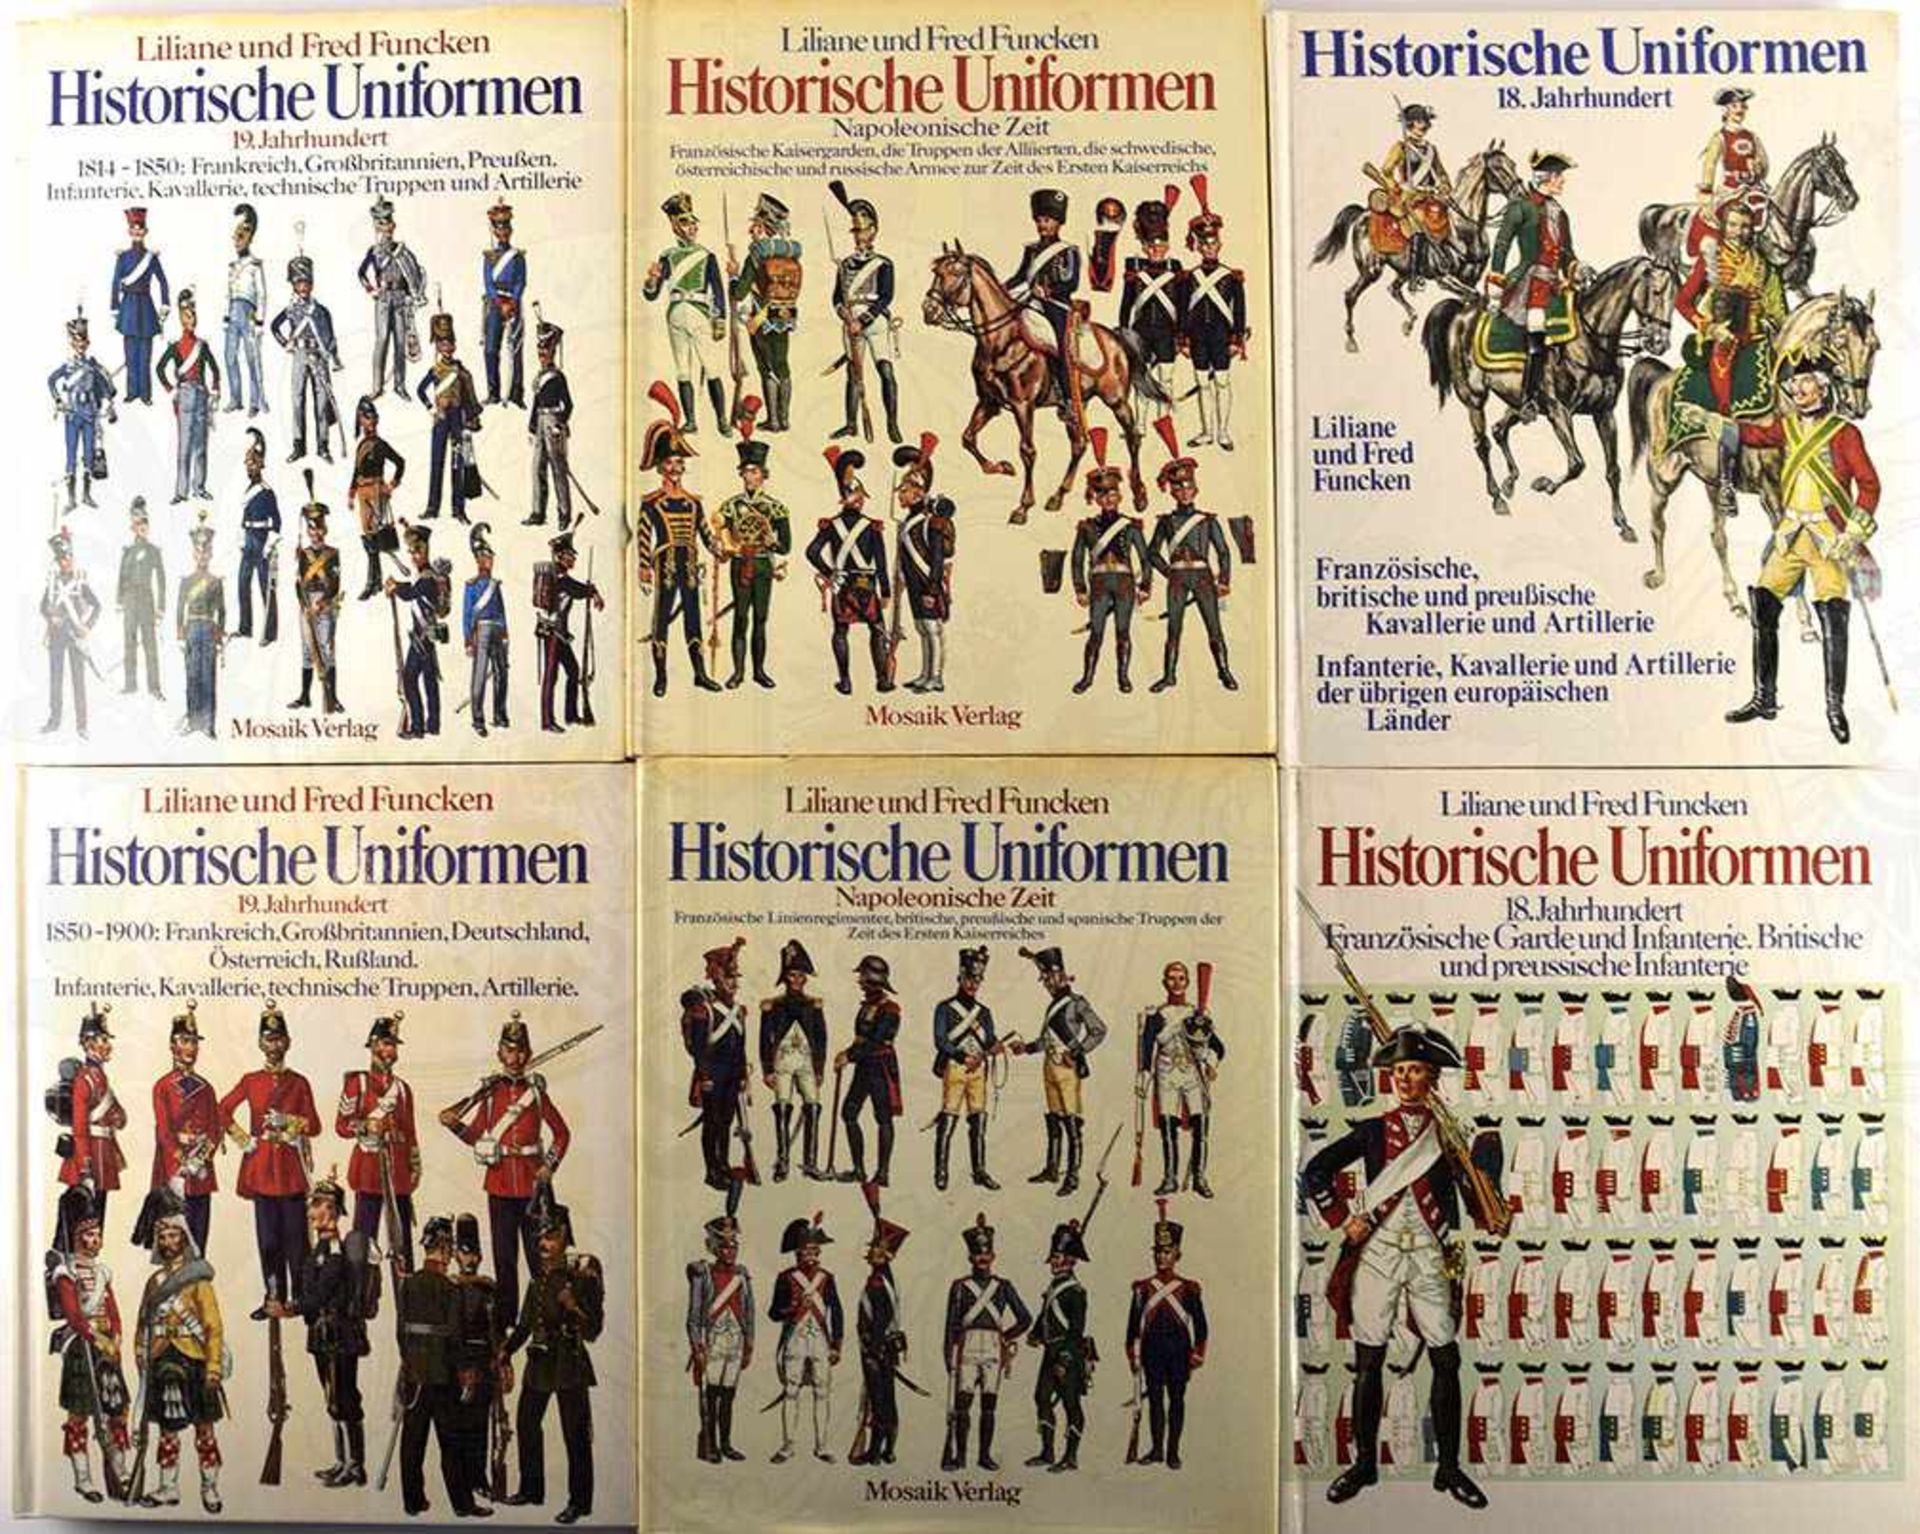 HISTORISCHE UNIFORMEN, 6 Bände, L. u. F. Funcken: 18. Jhd. - Franz., brit. und preuß. Kavallerie und